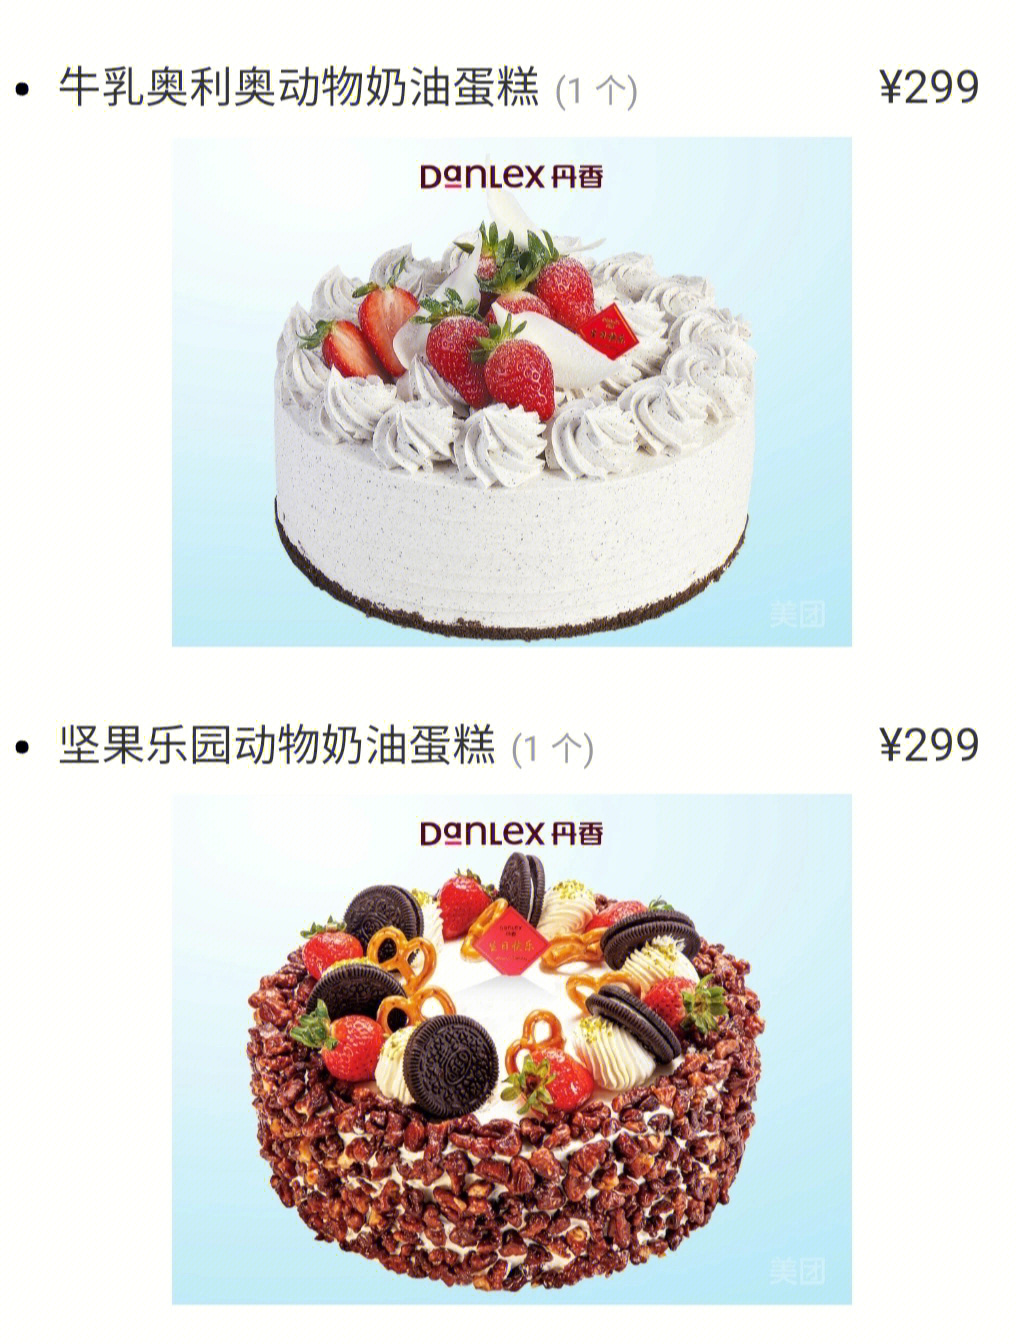 丹香蛋糕图片及价格表图片